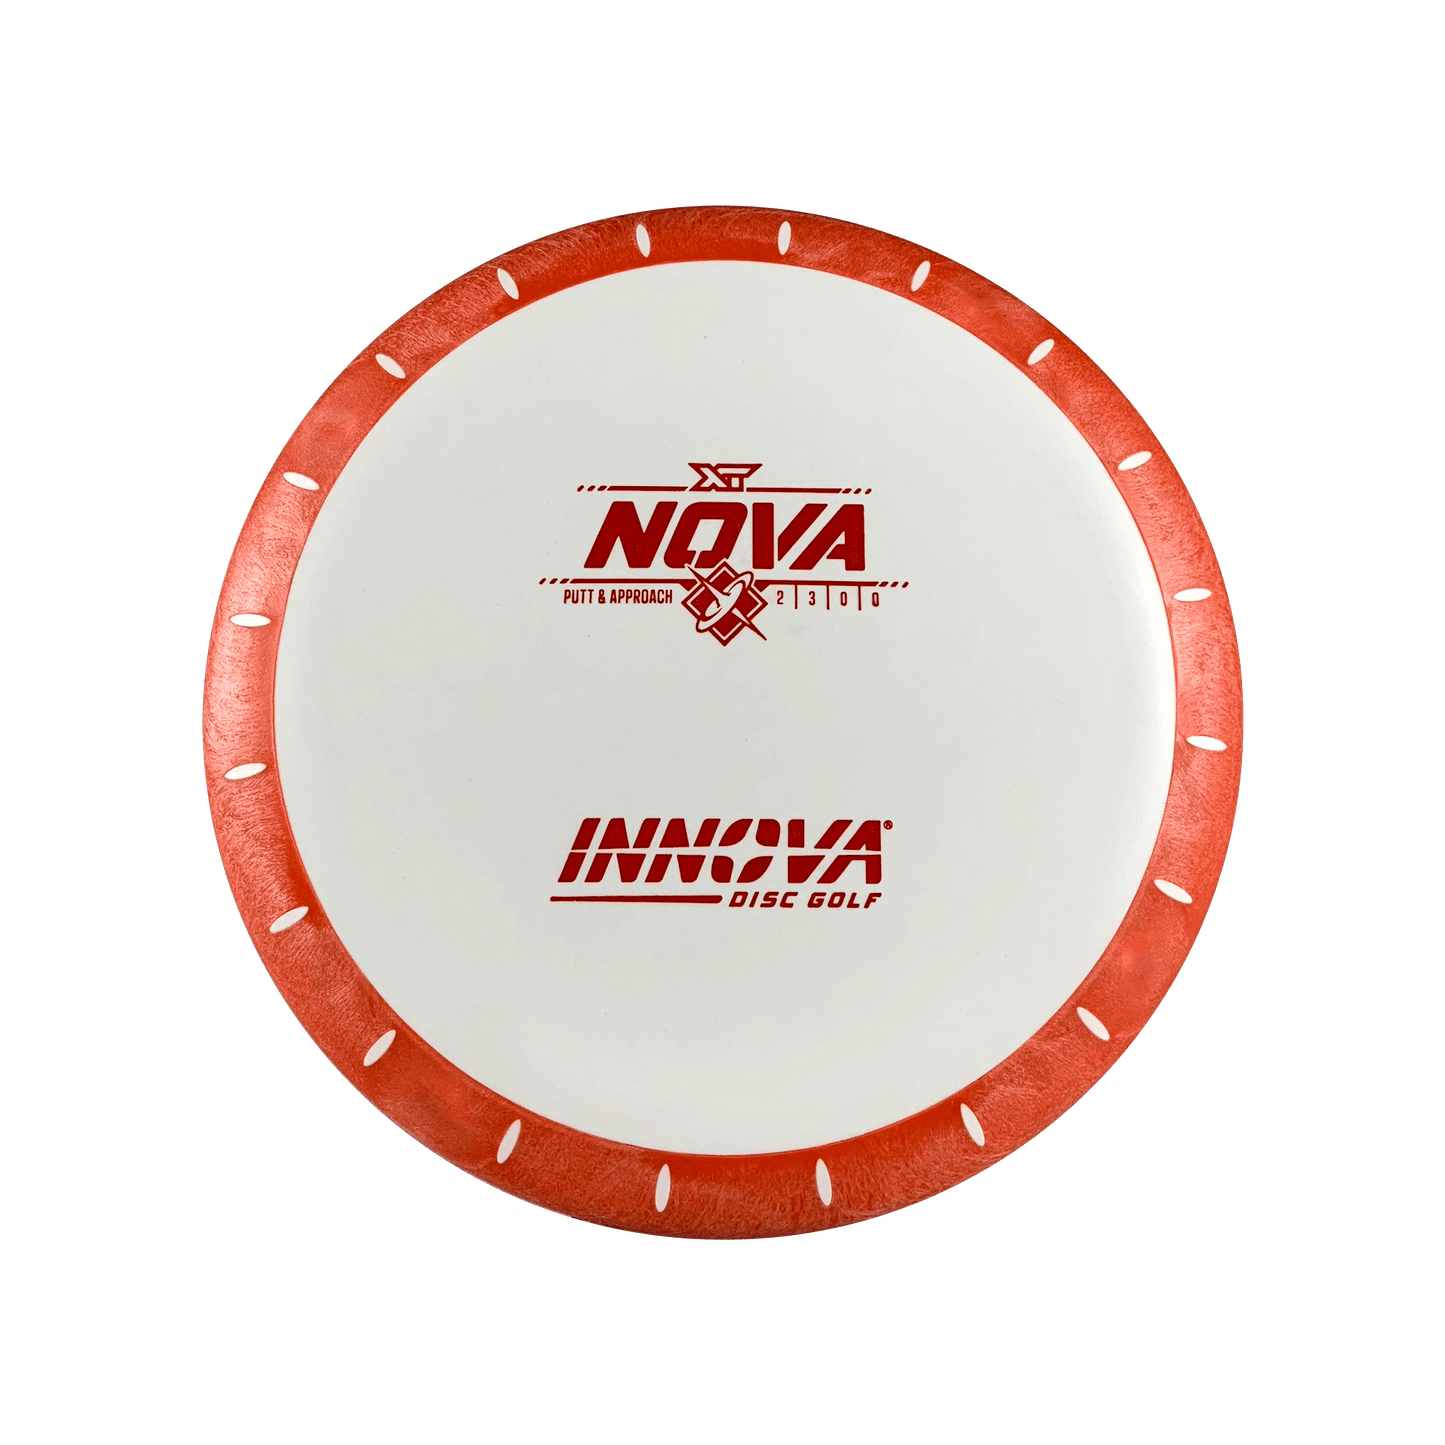 XT Nova Disc Innova multi / white orange 171 